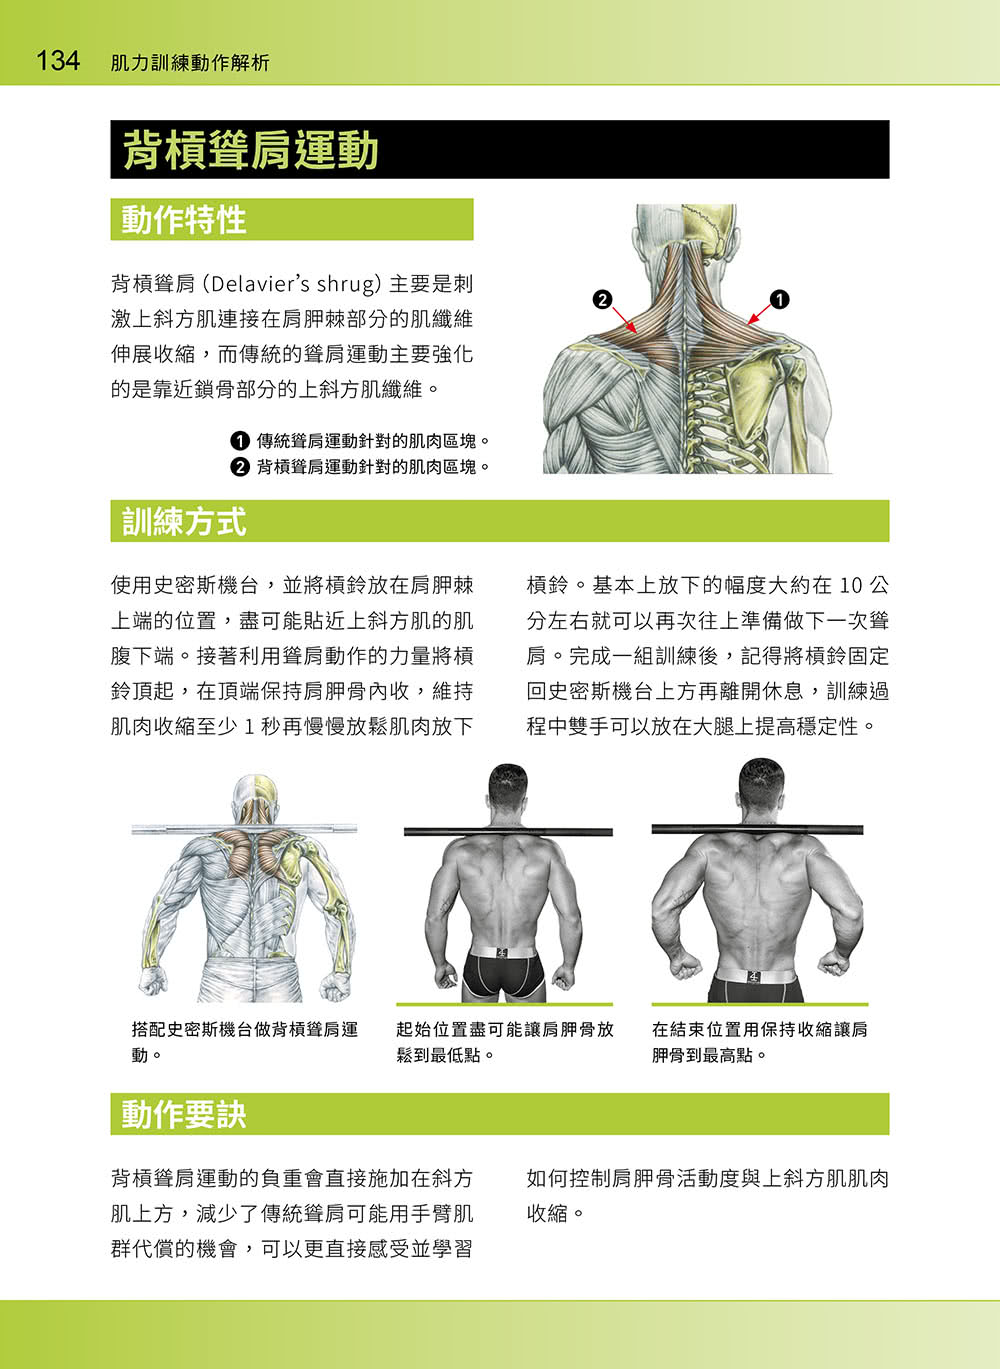 進階肌力訓練解剖聖經 2 － 高手只做不說的關鍵檔案 （附 加大手繪肌肉解剖圖海報）